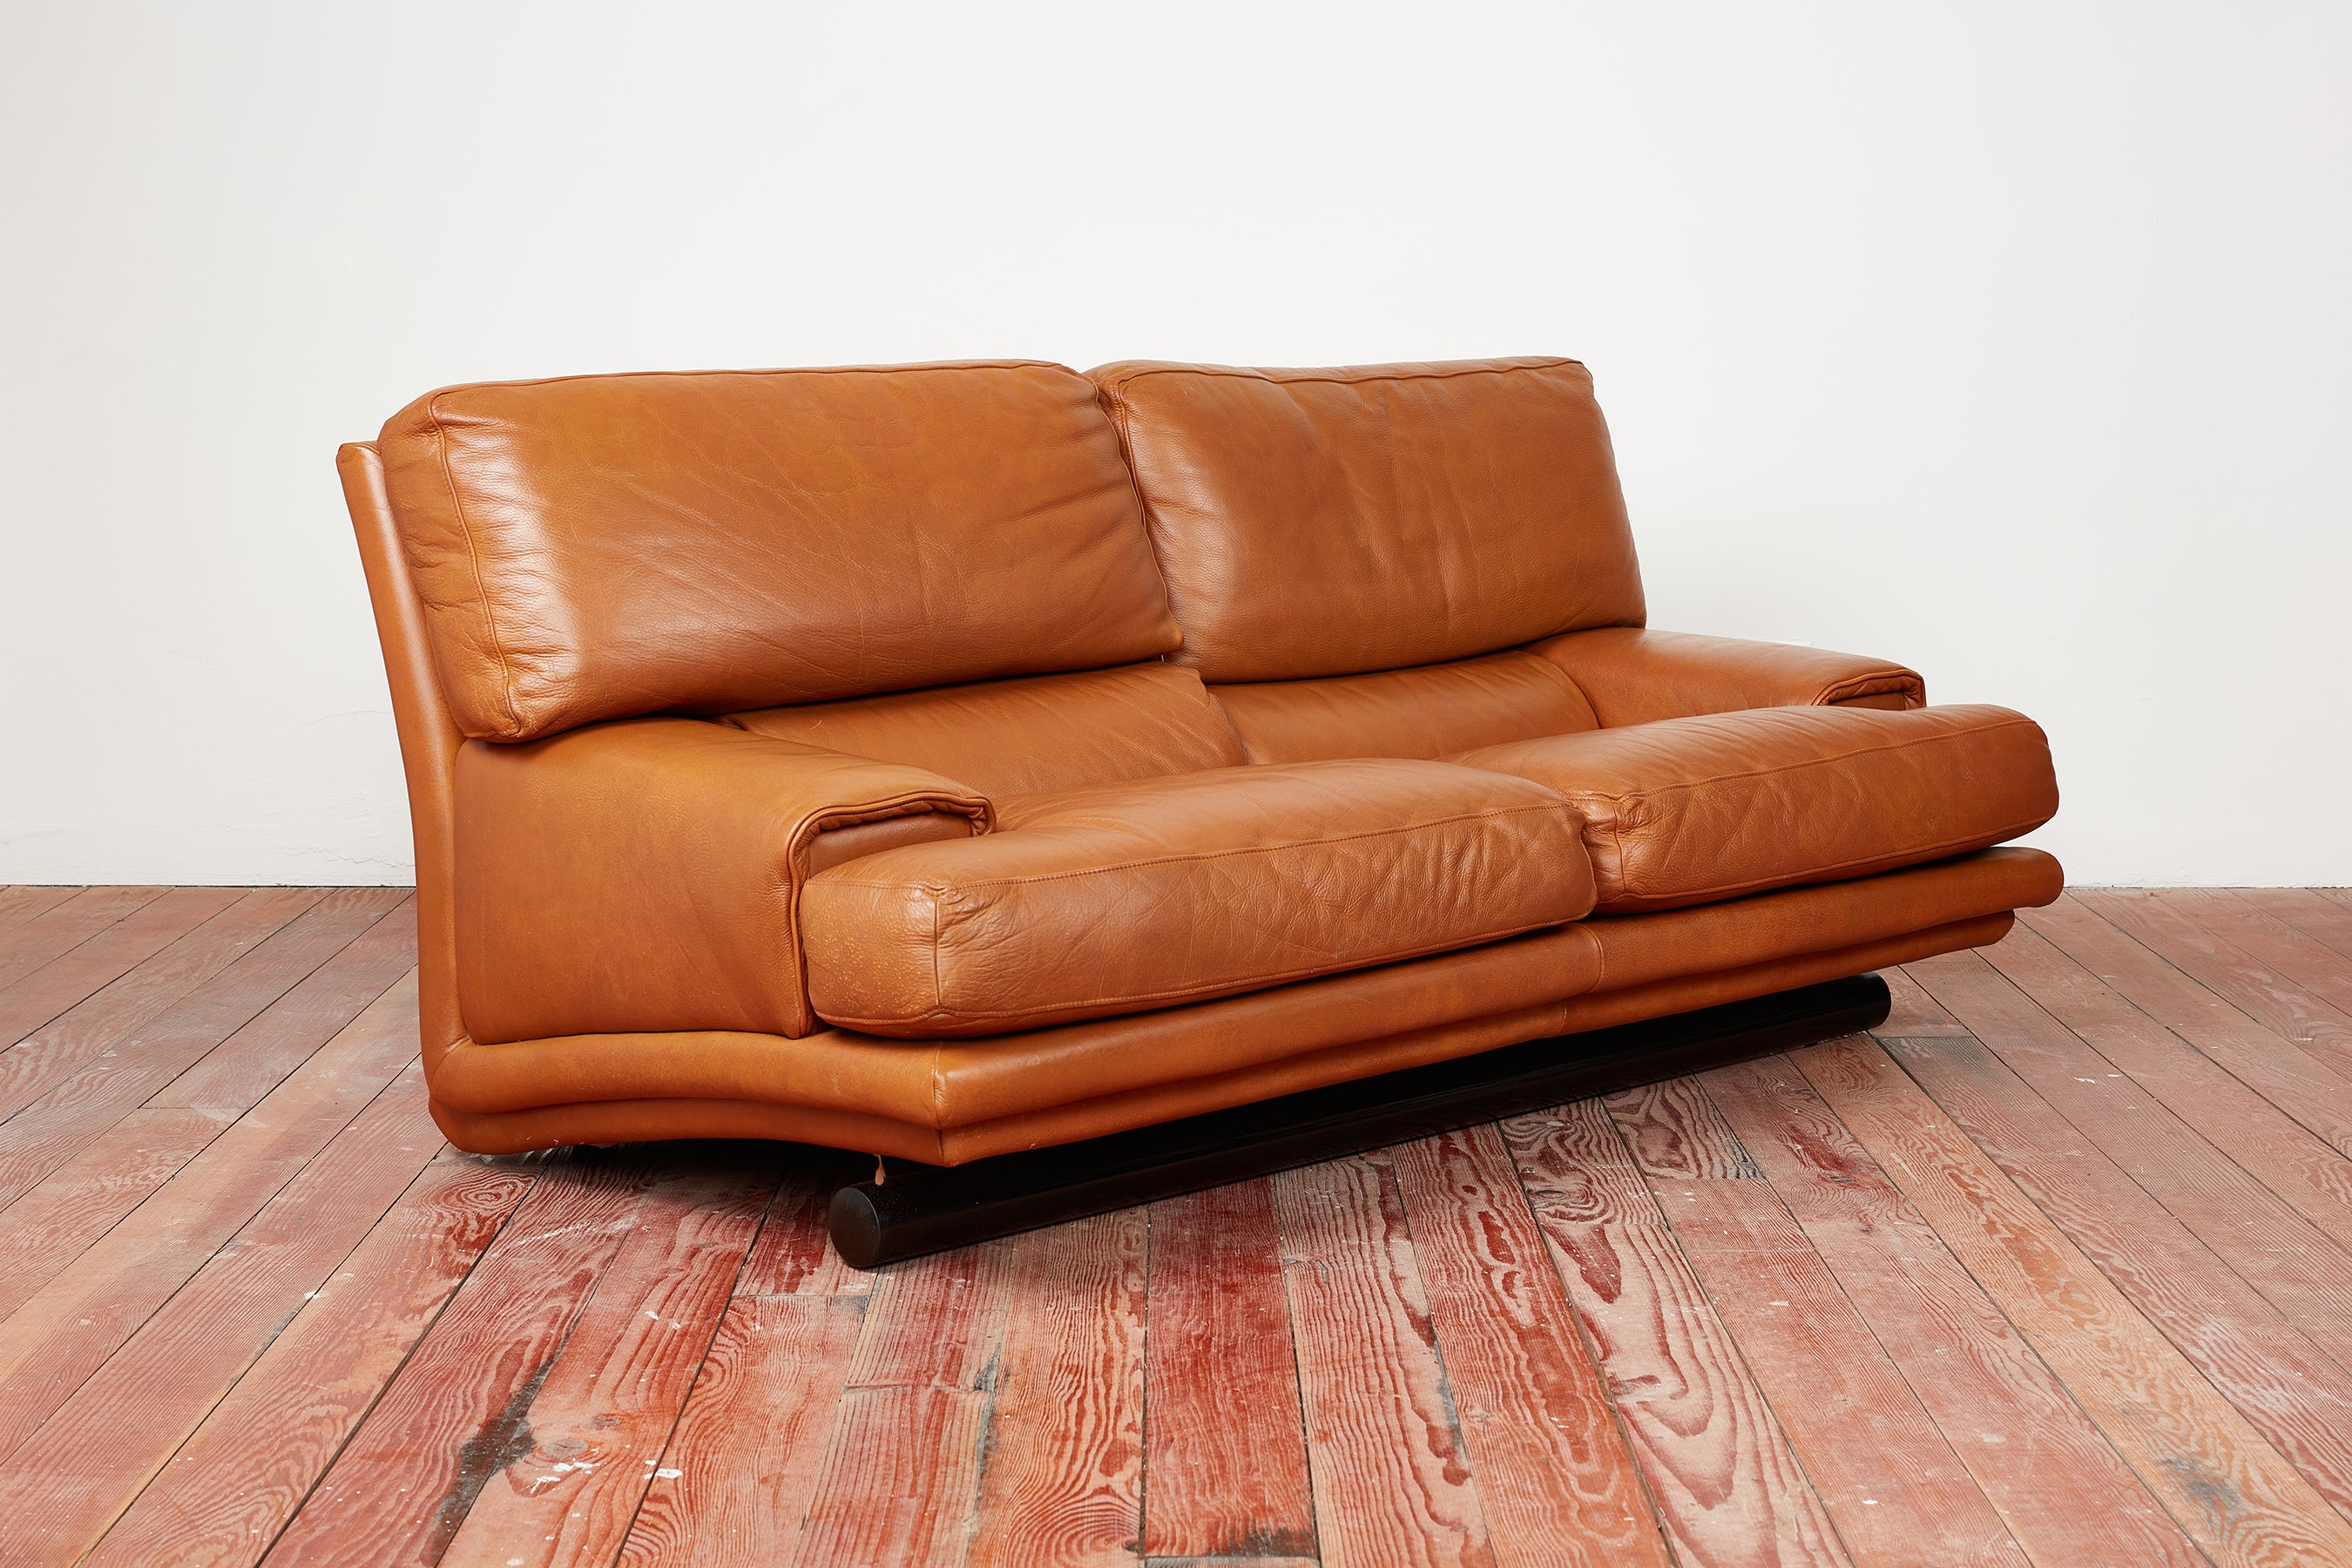 Vintage Sofas Tagged Leather - Orange Furniture Los Angeles